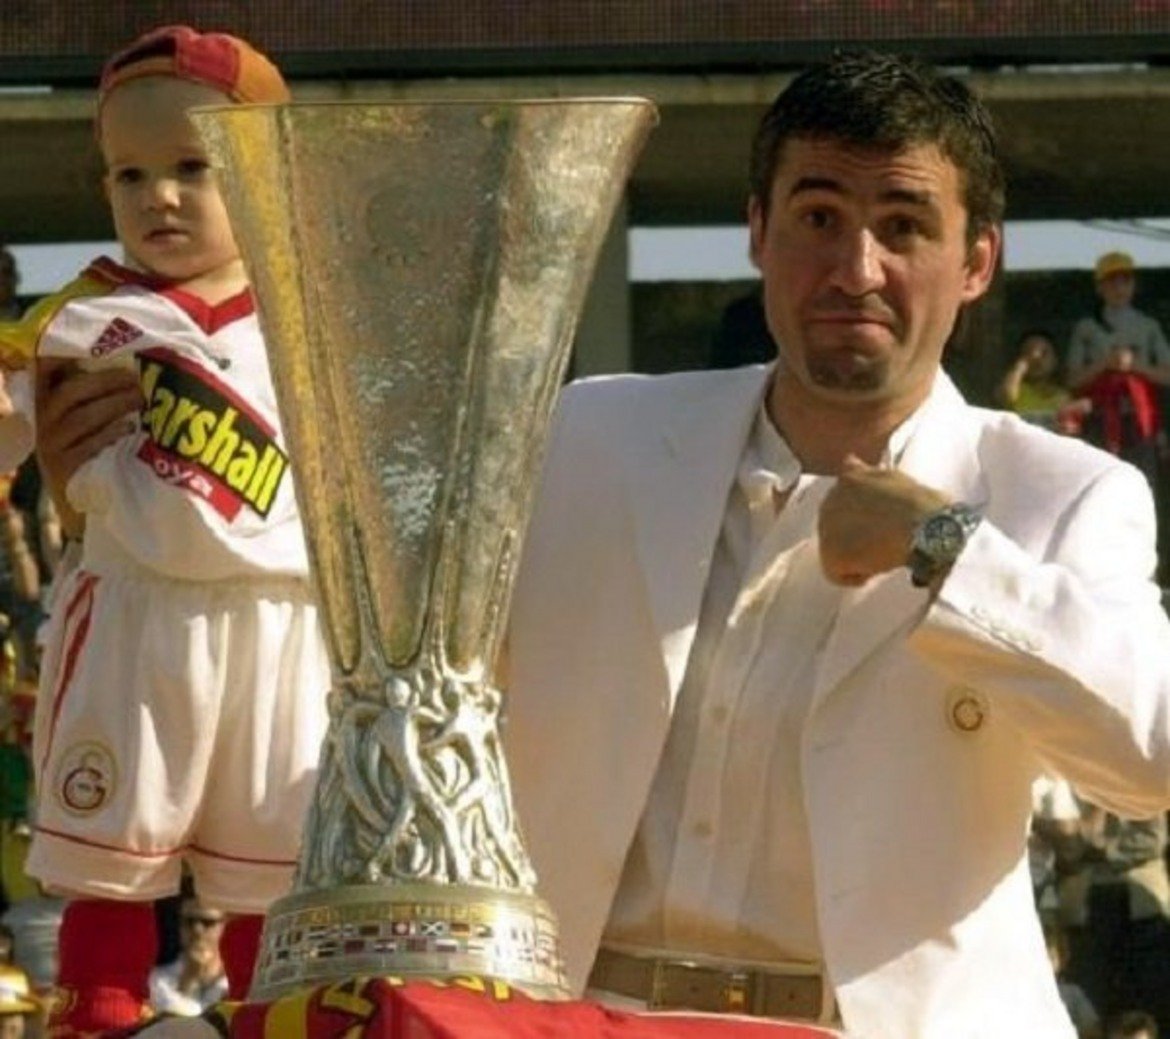 Георге Хаджи със сина си Янис Хаджи с Купата на УЕФА през 2000 година, когато Галатасарай победи Арсенал на финала след изпълнение на дузпи. Малкият Янис ще навърши 21 през октомври и върви уверено по стъпките на баща си, като вече е свързван с редица европейски грандове, включително и Барселона.